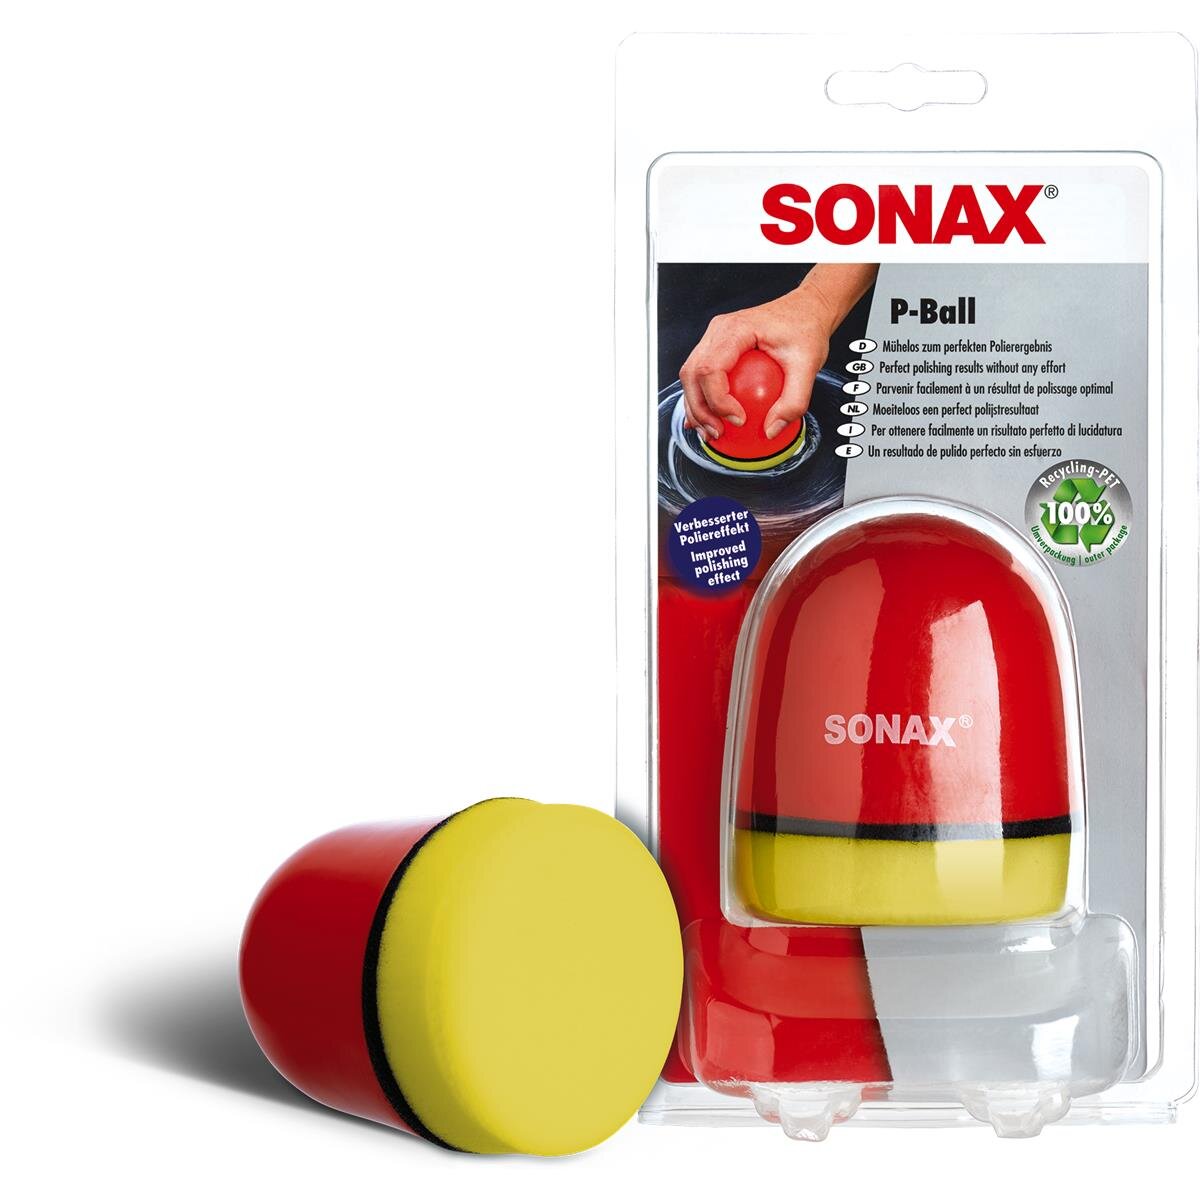 SONAX P-Ball. Jetzt im Shop, 15,79 €